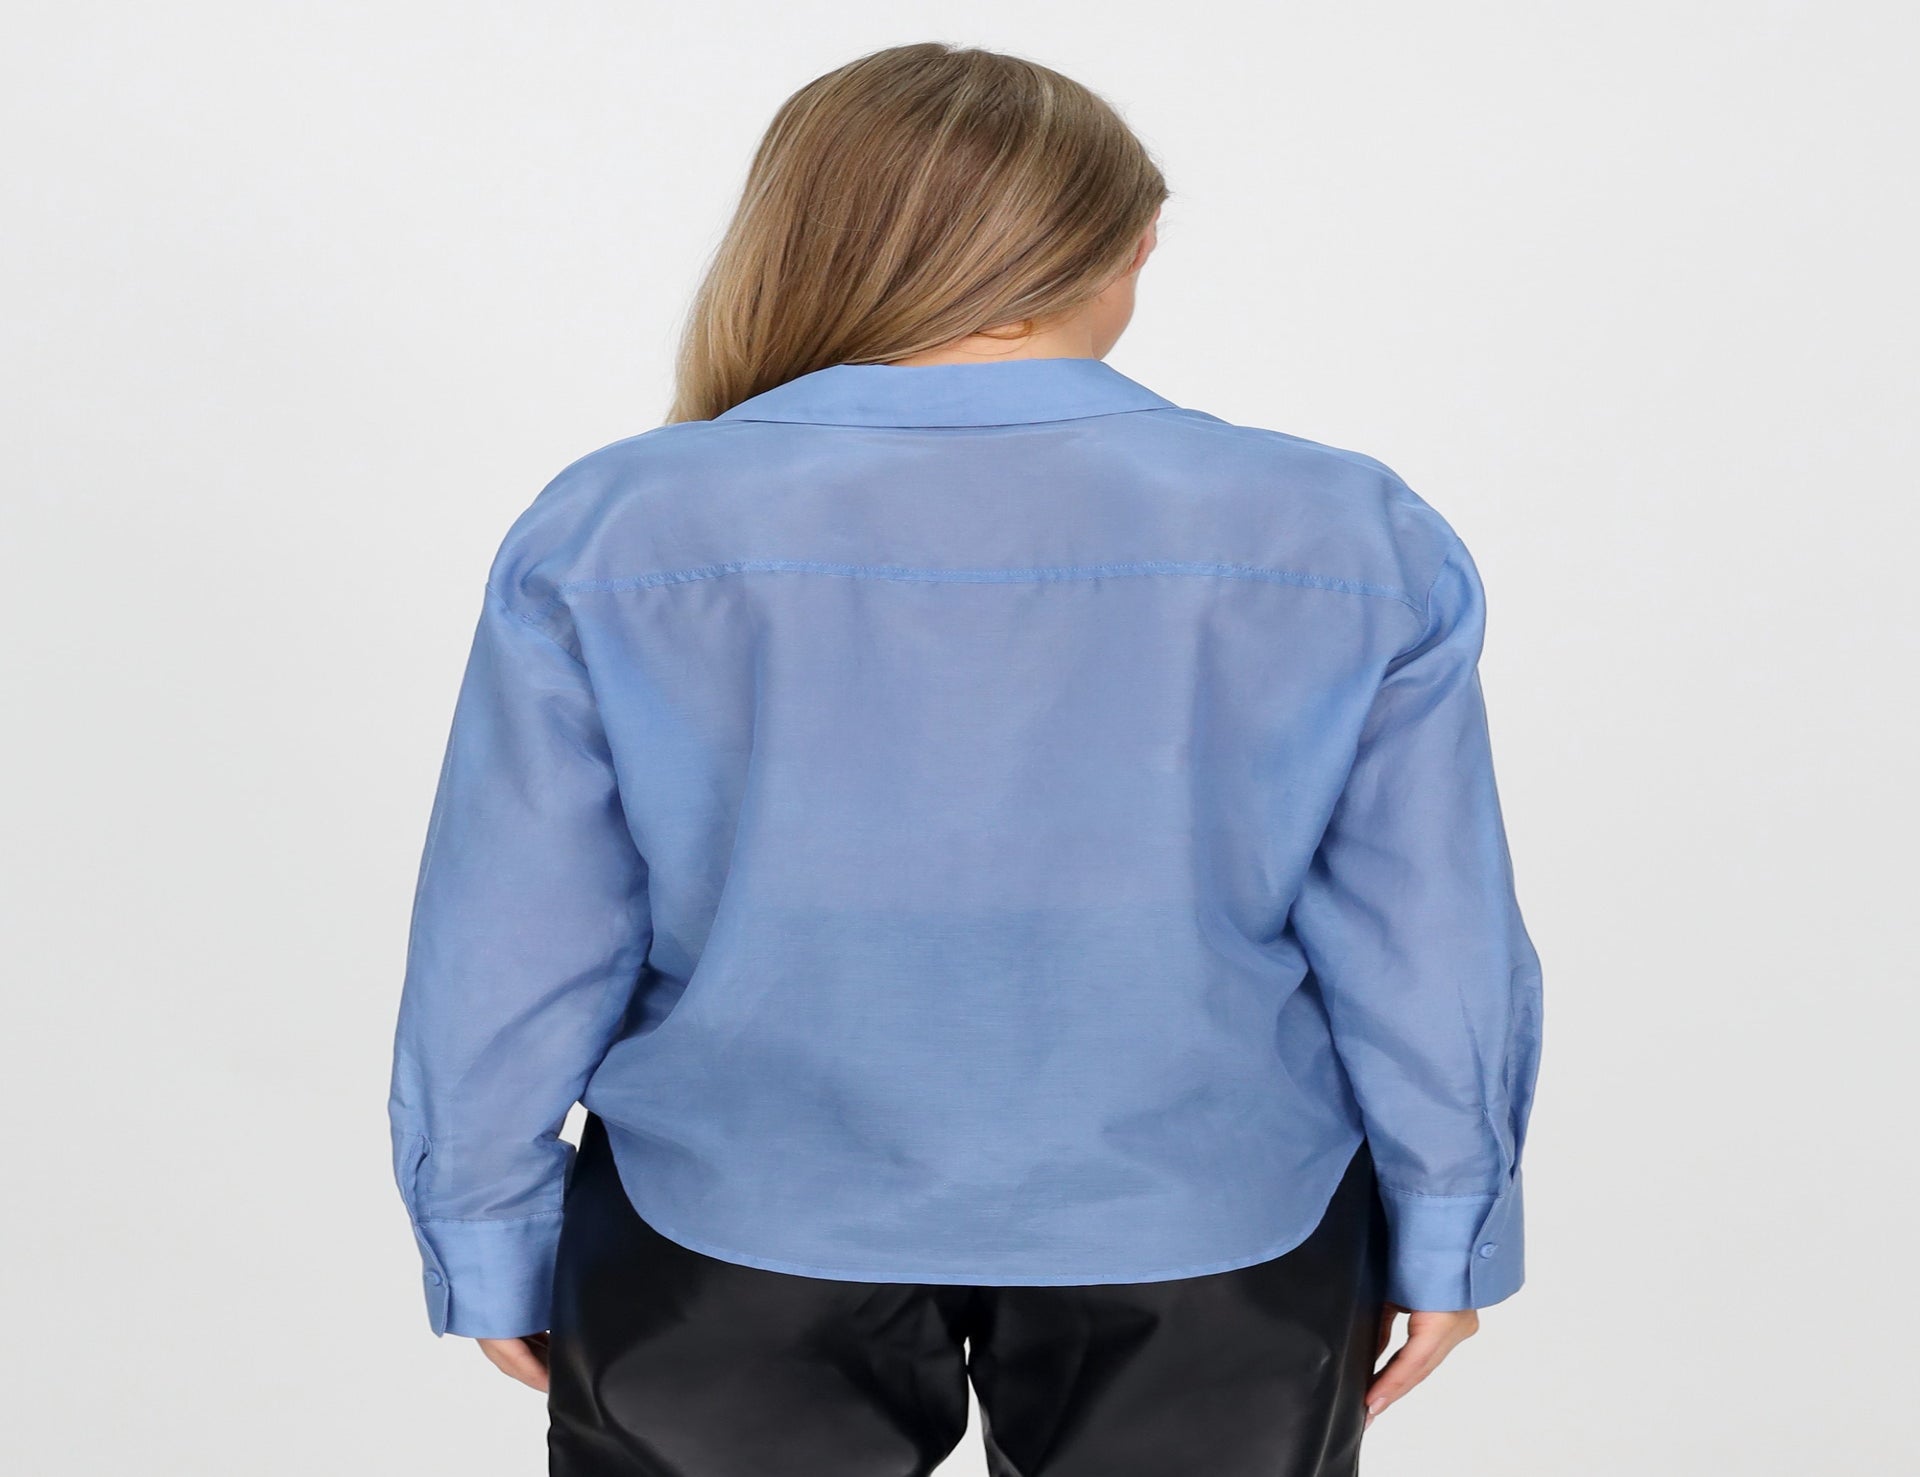 Silk Cotton Crop Shirt - Blue - Tops - Long Sleeve - Women's Clothing ...